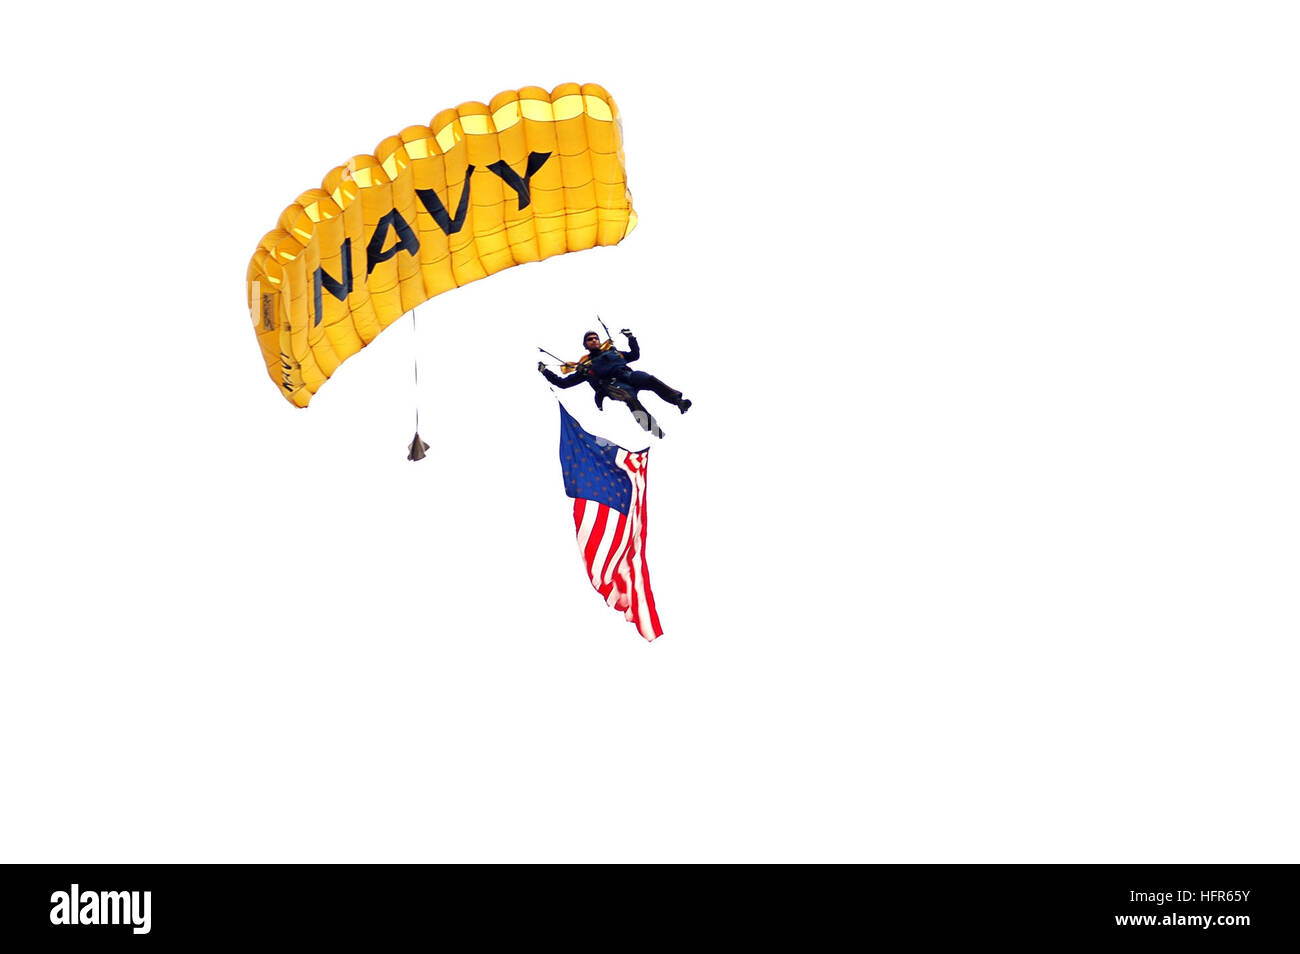 060517-N-0068M-001 Chicago, Ill. (17 maggio 2005) - La Marina parachute team Leapfrogs mettere una mostra a Prosser Academy come una parte della settimana della marina di Chicago e sono prenotati per eseguire a 13 altri eventi simili in tutto il paese di quest'anno. Navy settimana Chicago è uno dei venti Navy settimane previsto per città degli Stati Uniti quest'anno dalla Marina Militare Ufficio di comunicazione alla comunità (NAVCO). Stati Uniti Navy foto di Fire Controlman 2a classe Jason J. Mosher (rilasciato) Navy US 060517-N-0068M-001 Marina parachute team Leapfrogs mettere una mostra a Prosser Academy come una parte della settimana della marina di Chicago e sono prenotati per eseguire a 13 altri suc Foto Stock